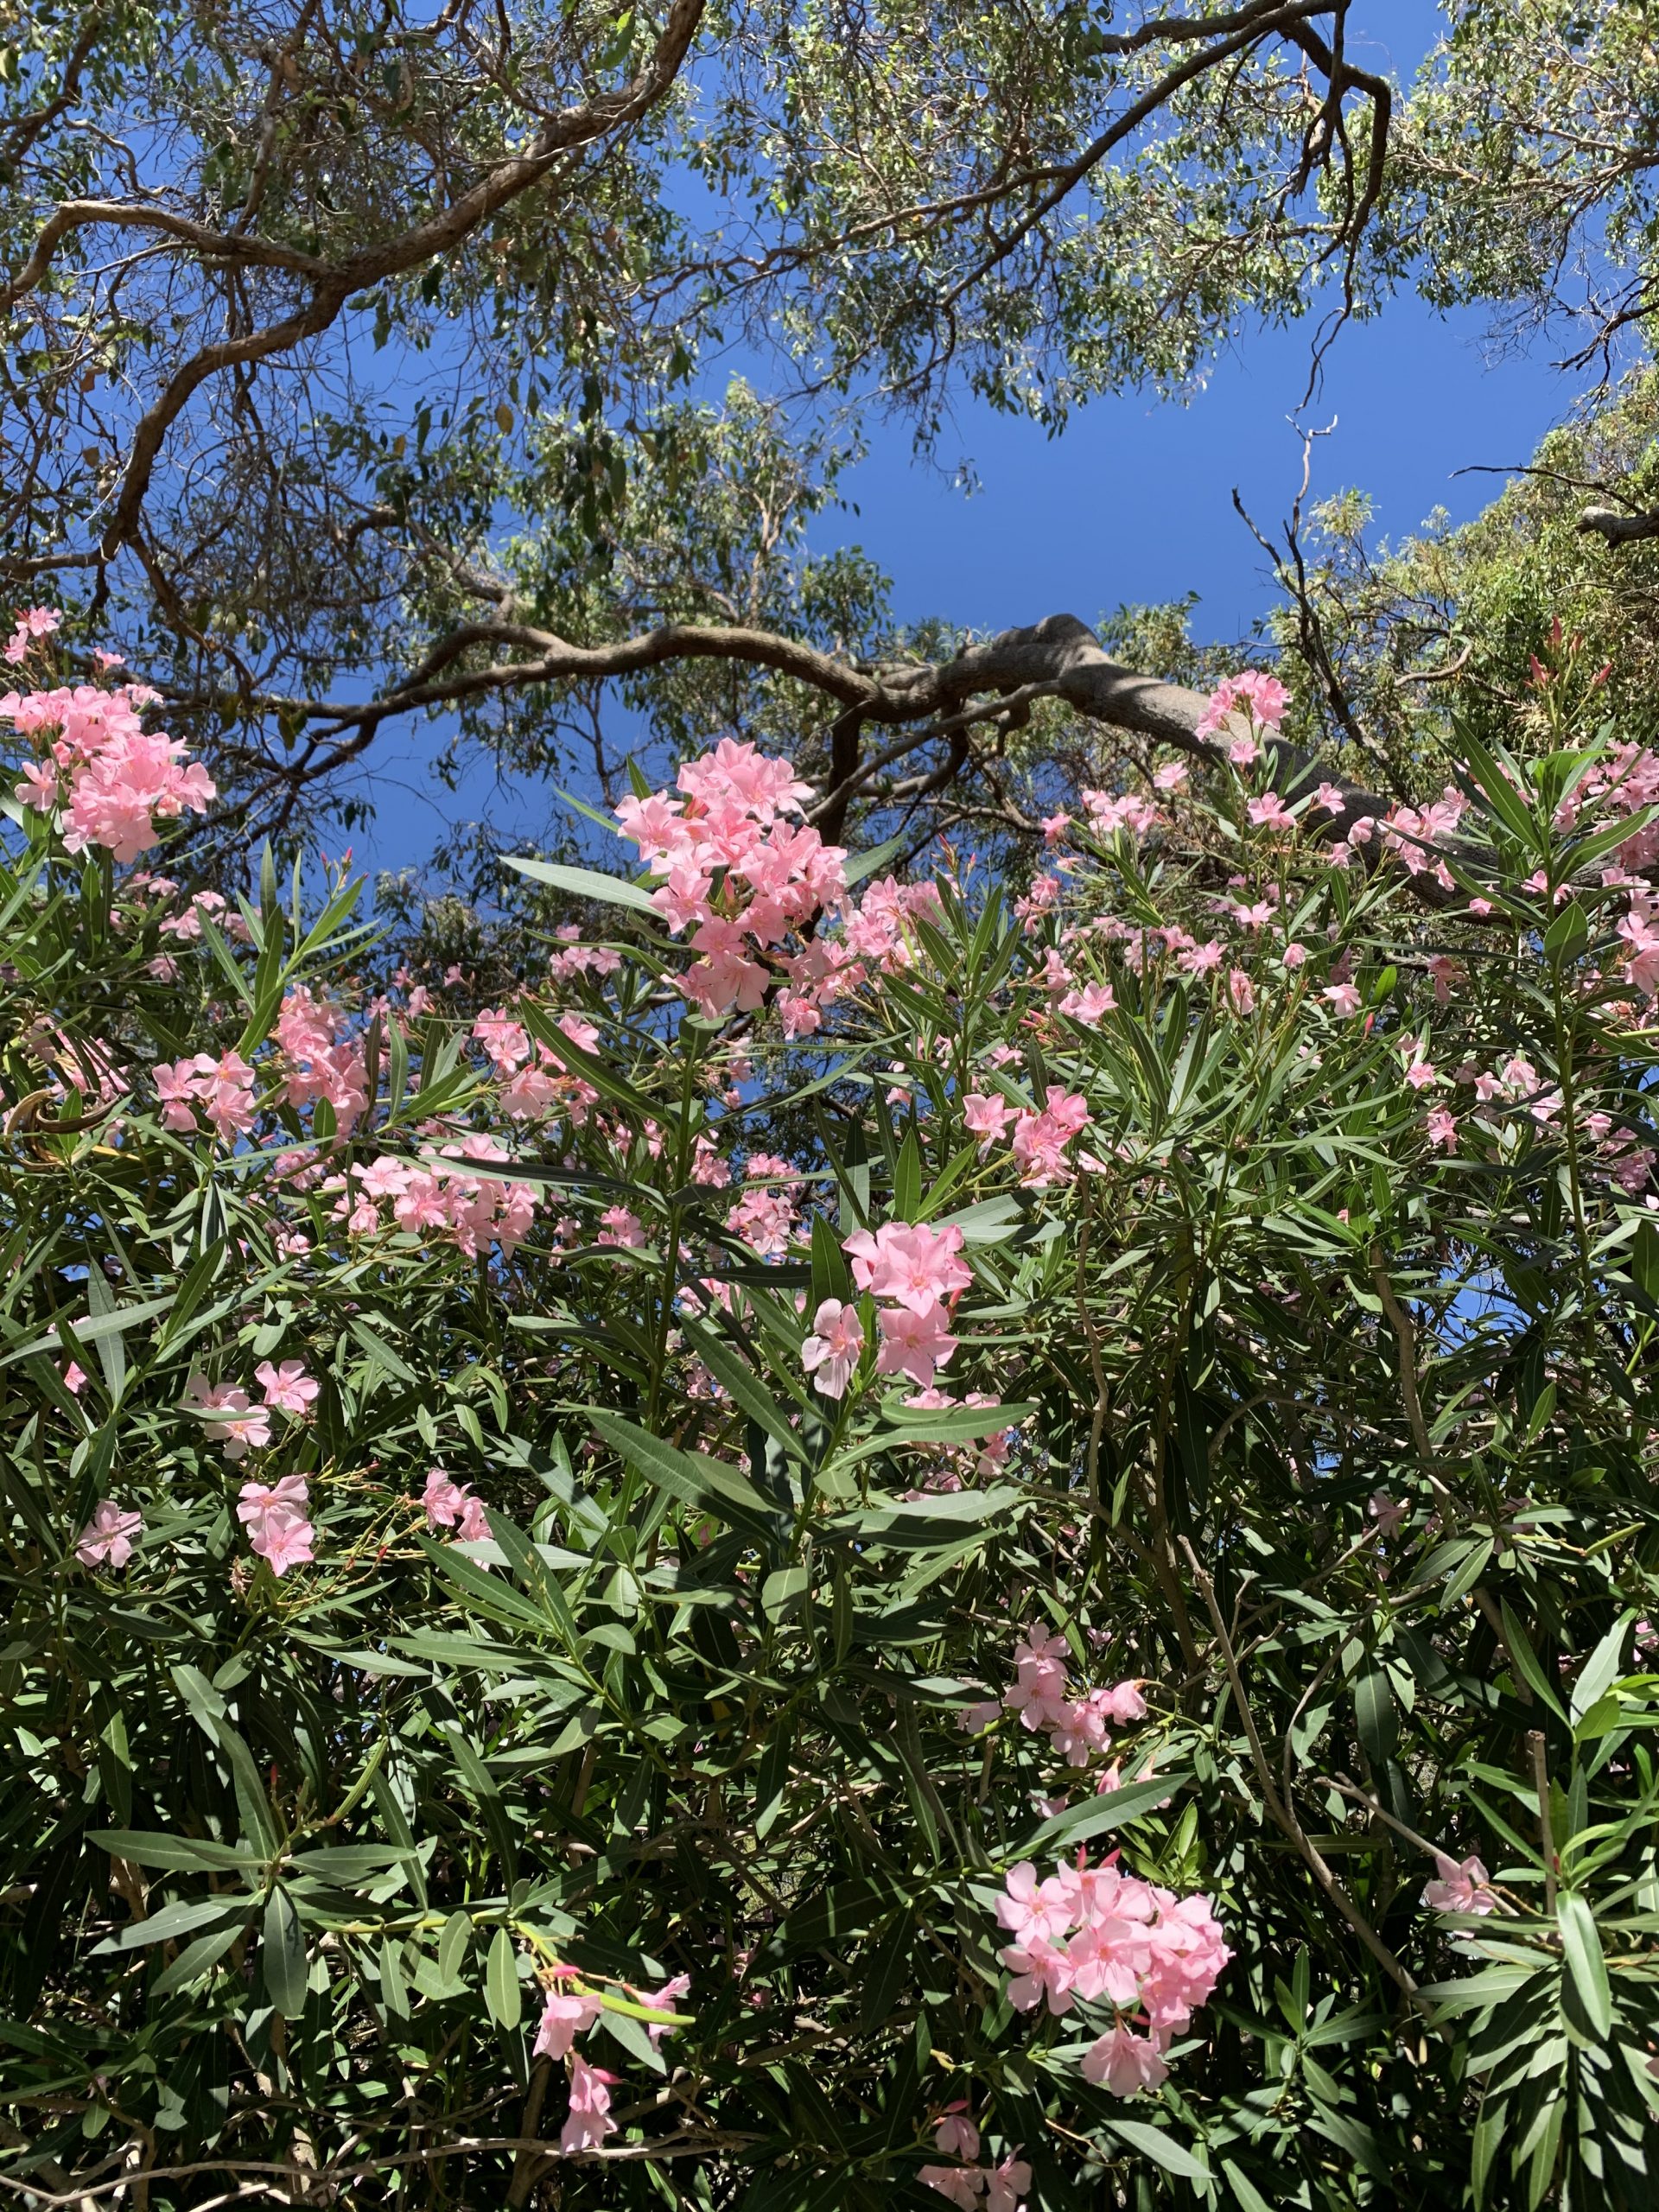 Flower in Australia